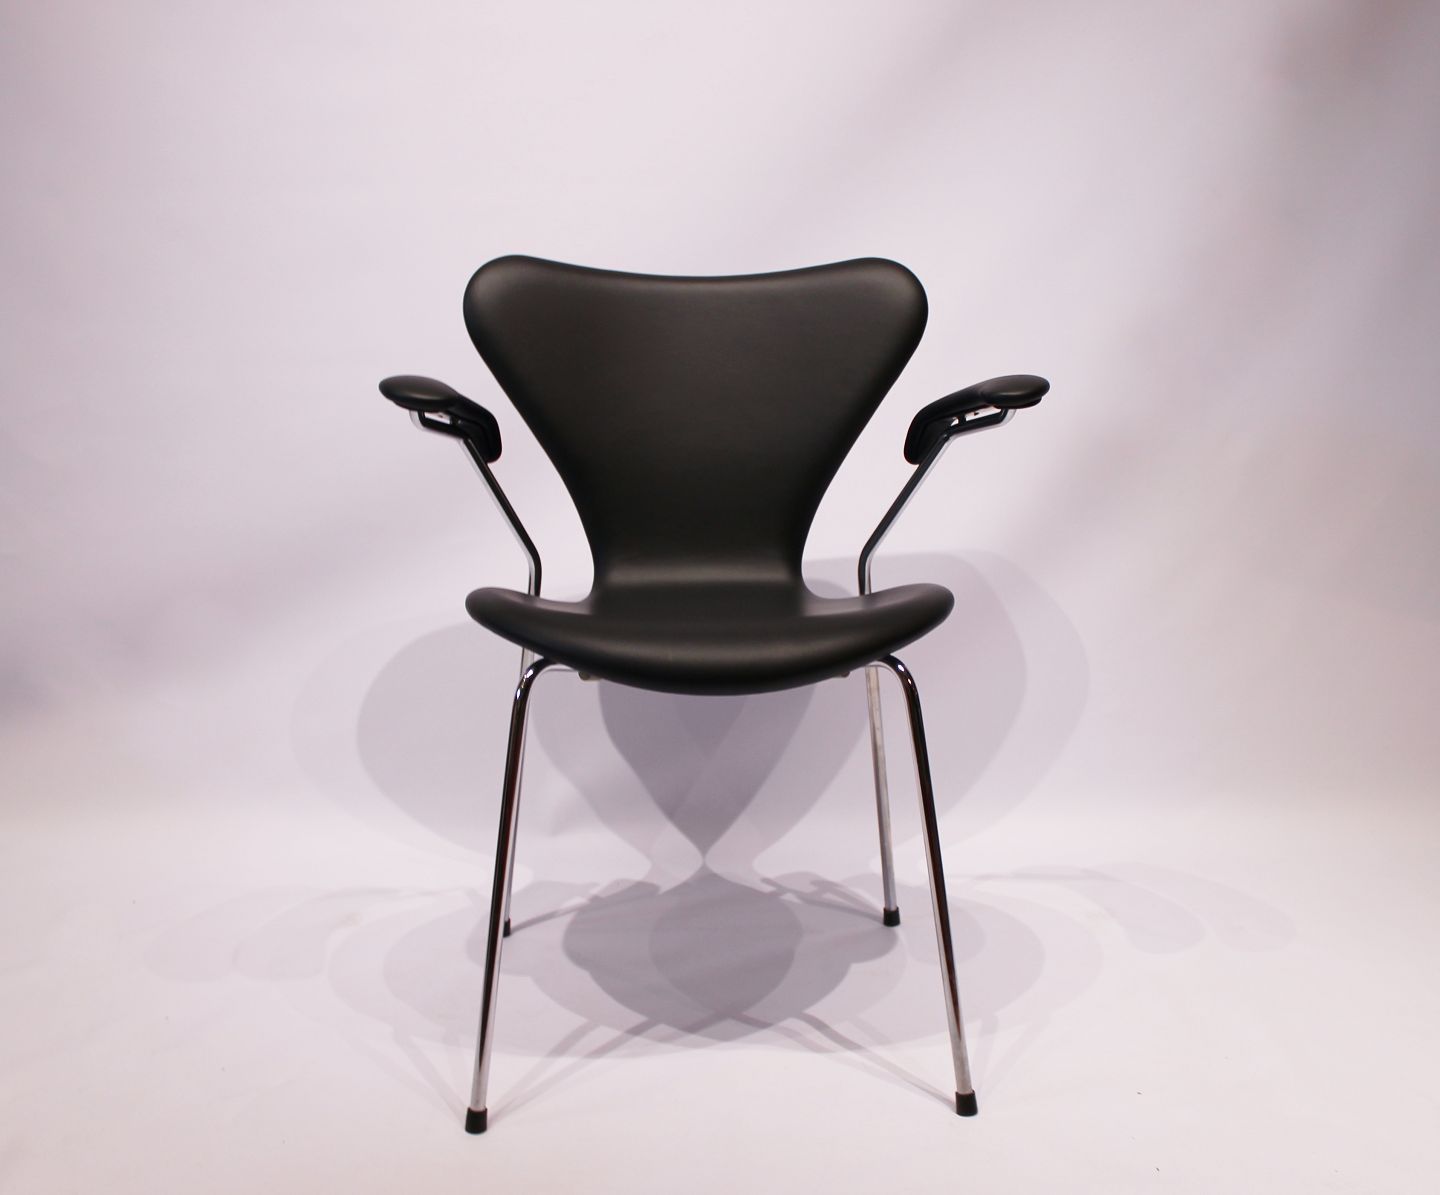 ekstremt Dalset garage Syver stol, model 3207, med armlæn i sort klassisk læder af Arne Jacobsen  og Fri - Osted Antik & Design